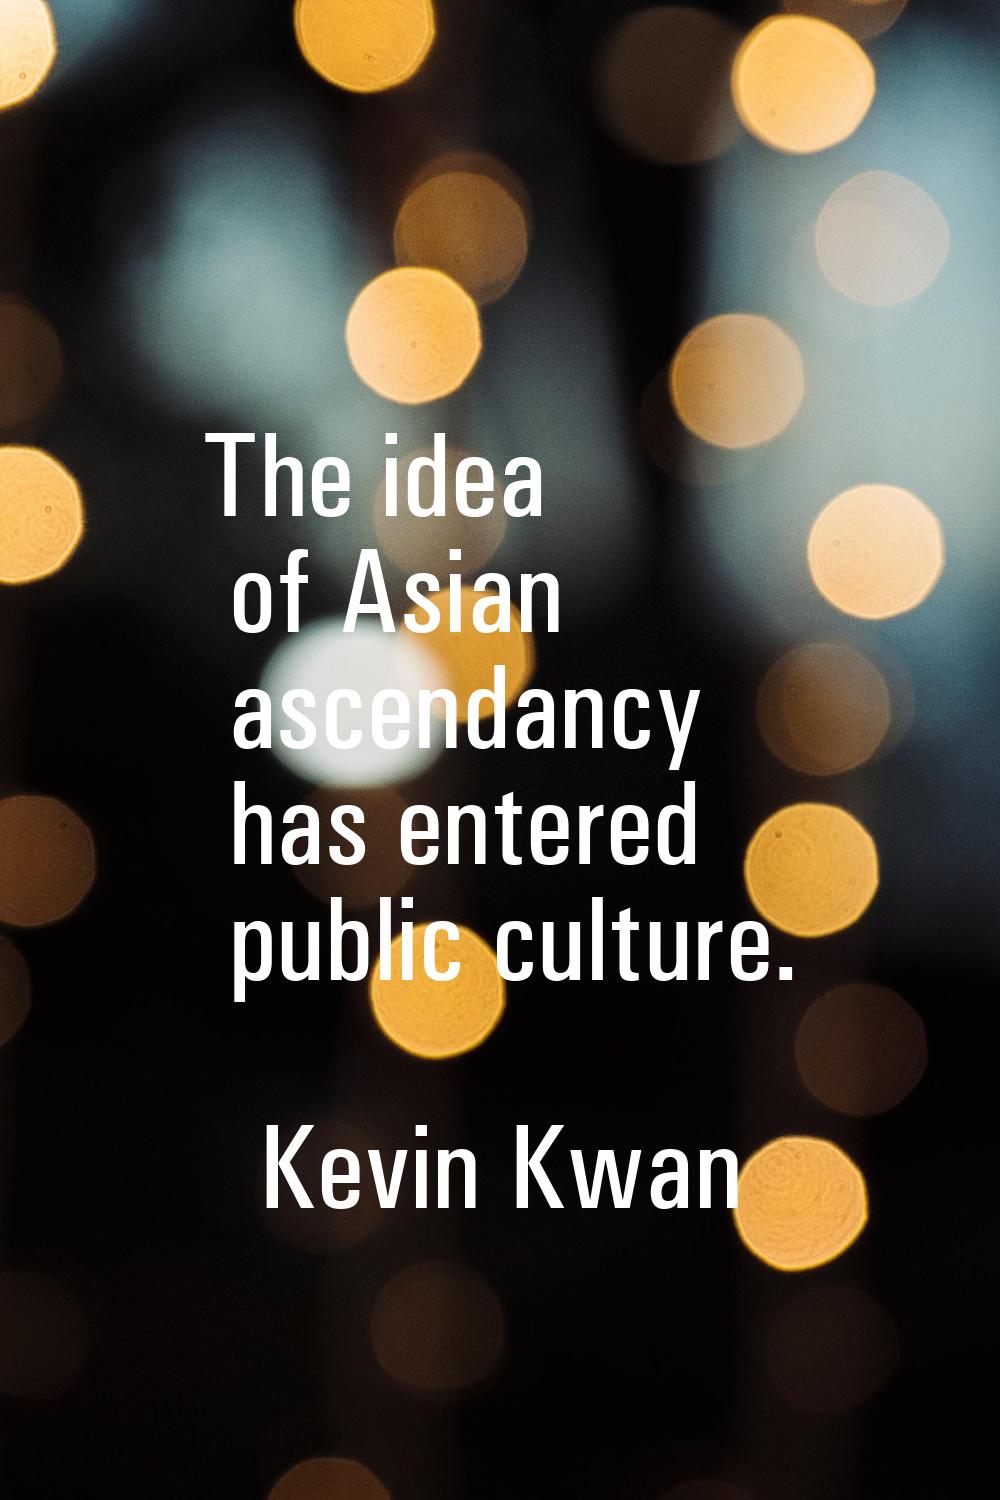 The idea of Asian ascendancy has entered public culture.